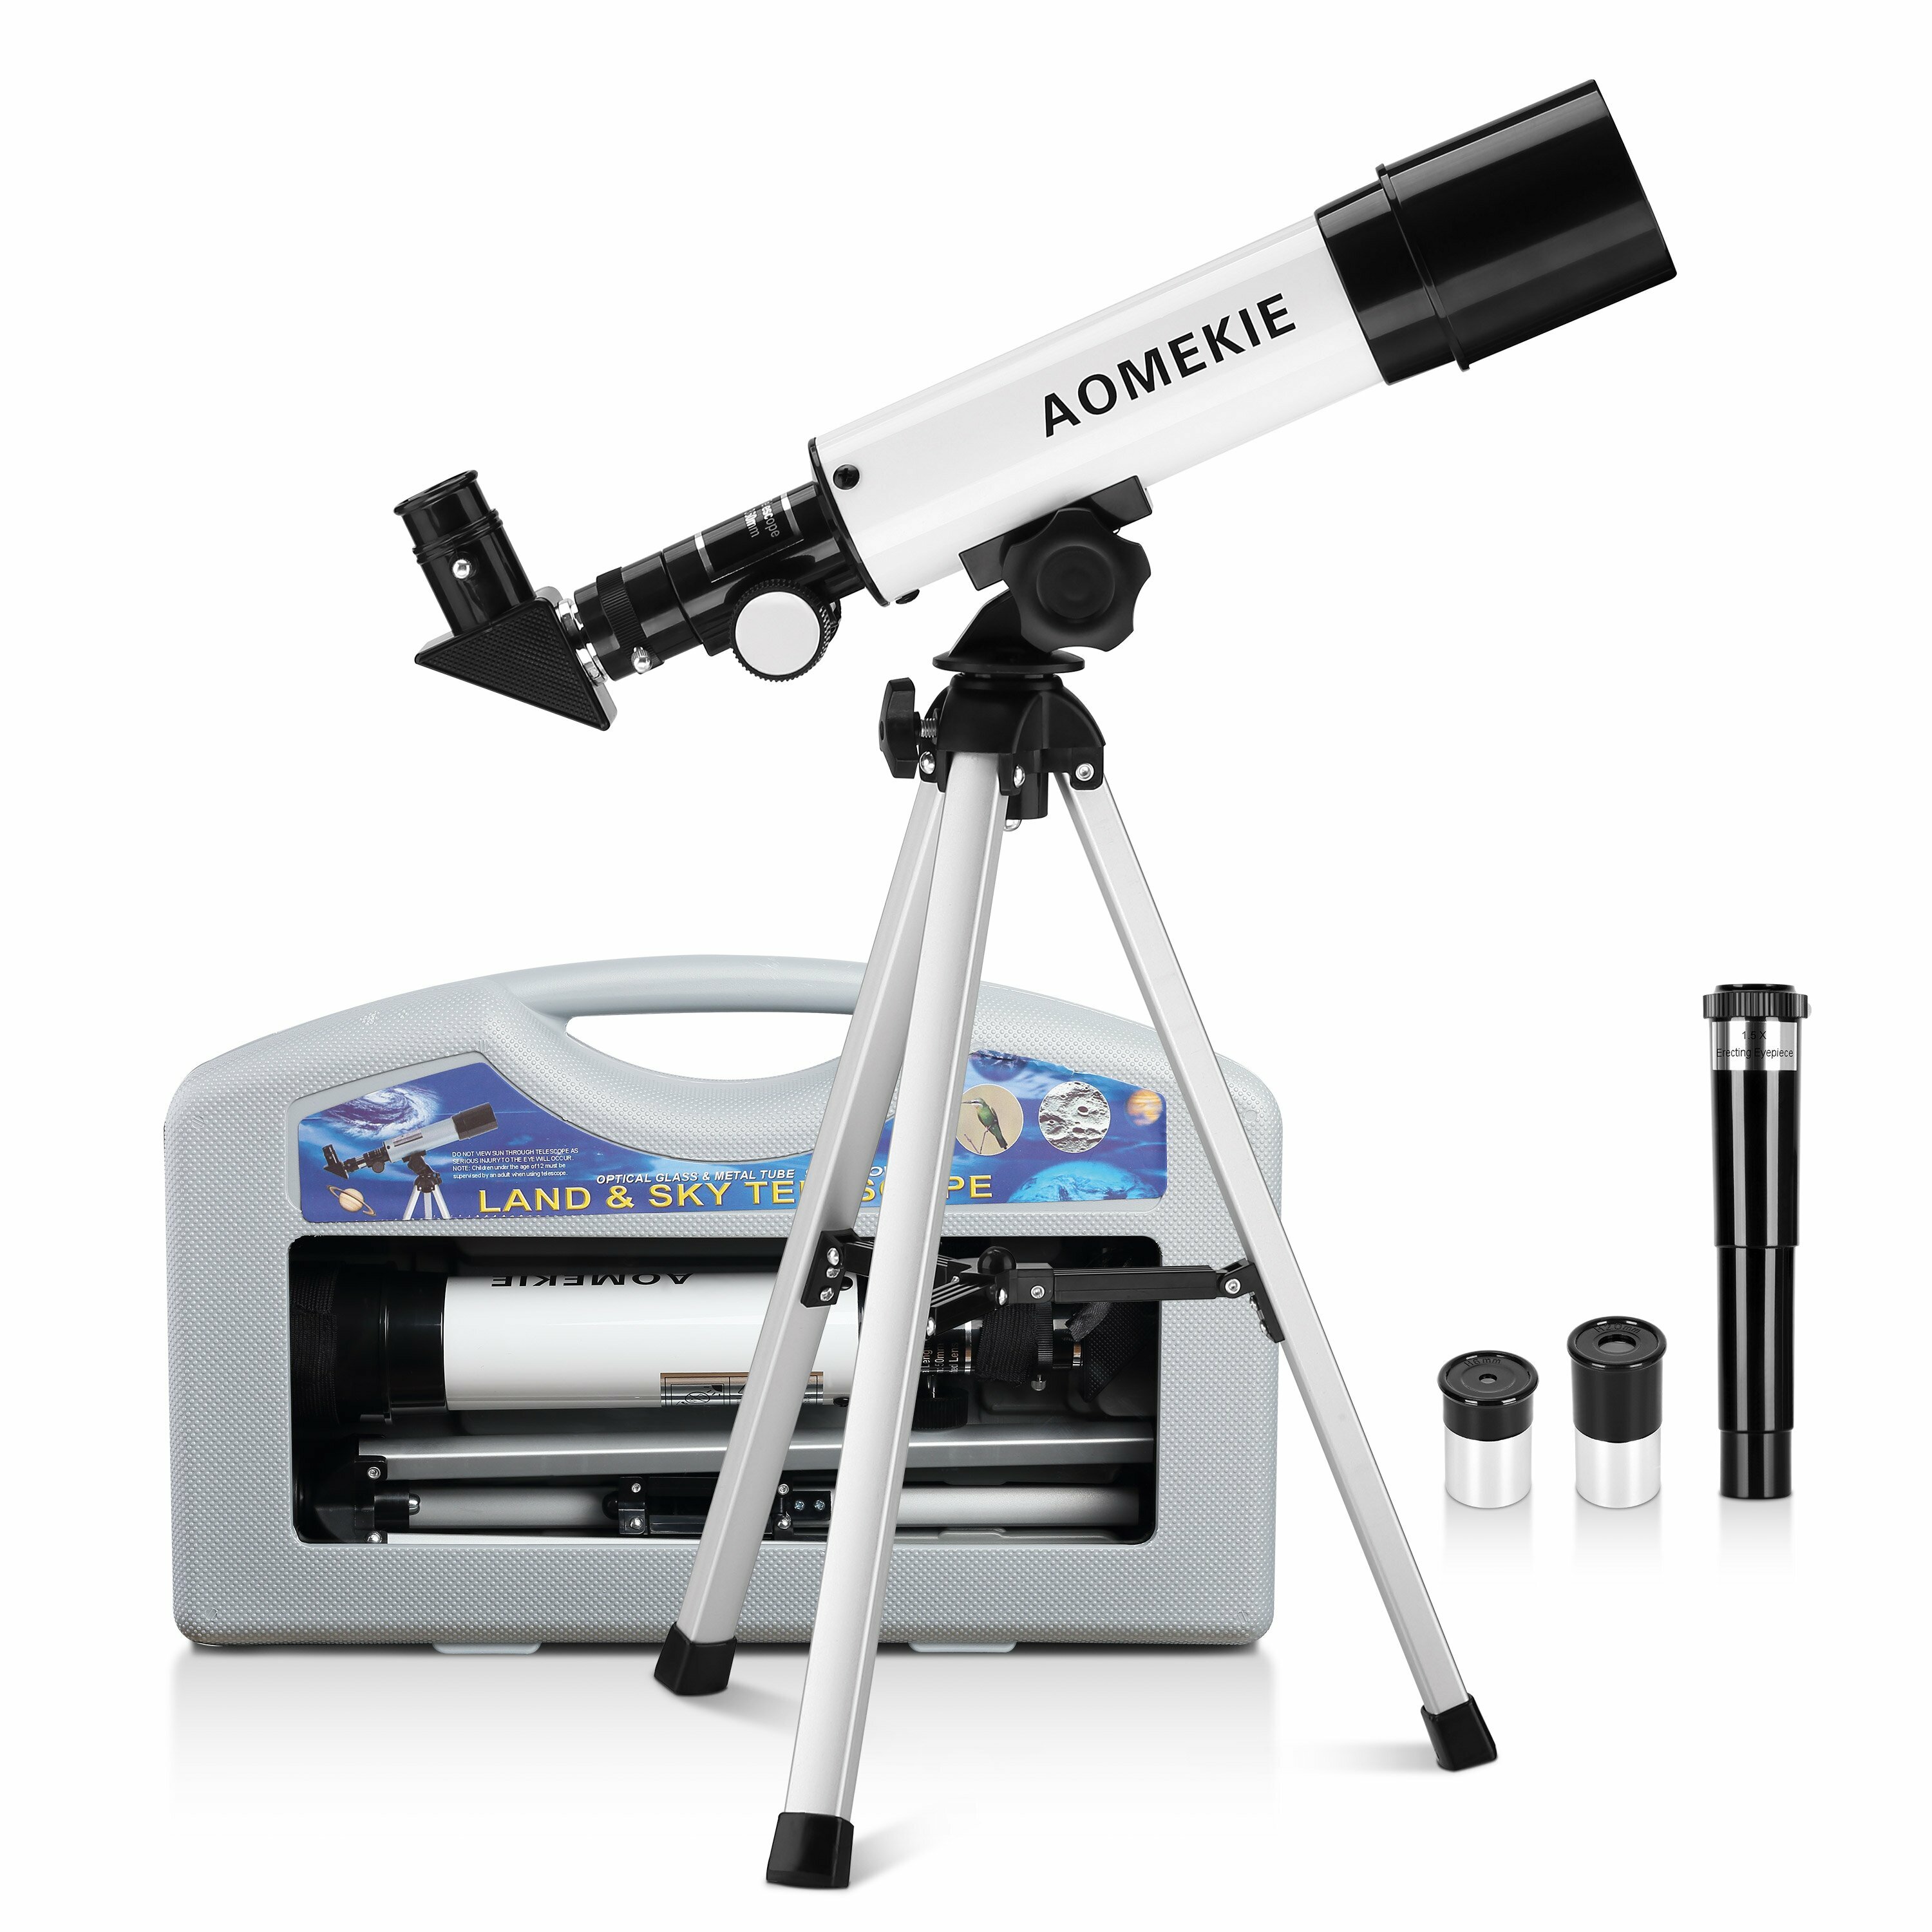 Teleskop refraktorowy AOMEKIE dla dzieci 50/360 mm dla początkujących w astronomii z etui na przenoszenie, statywem, okularem prostującym